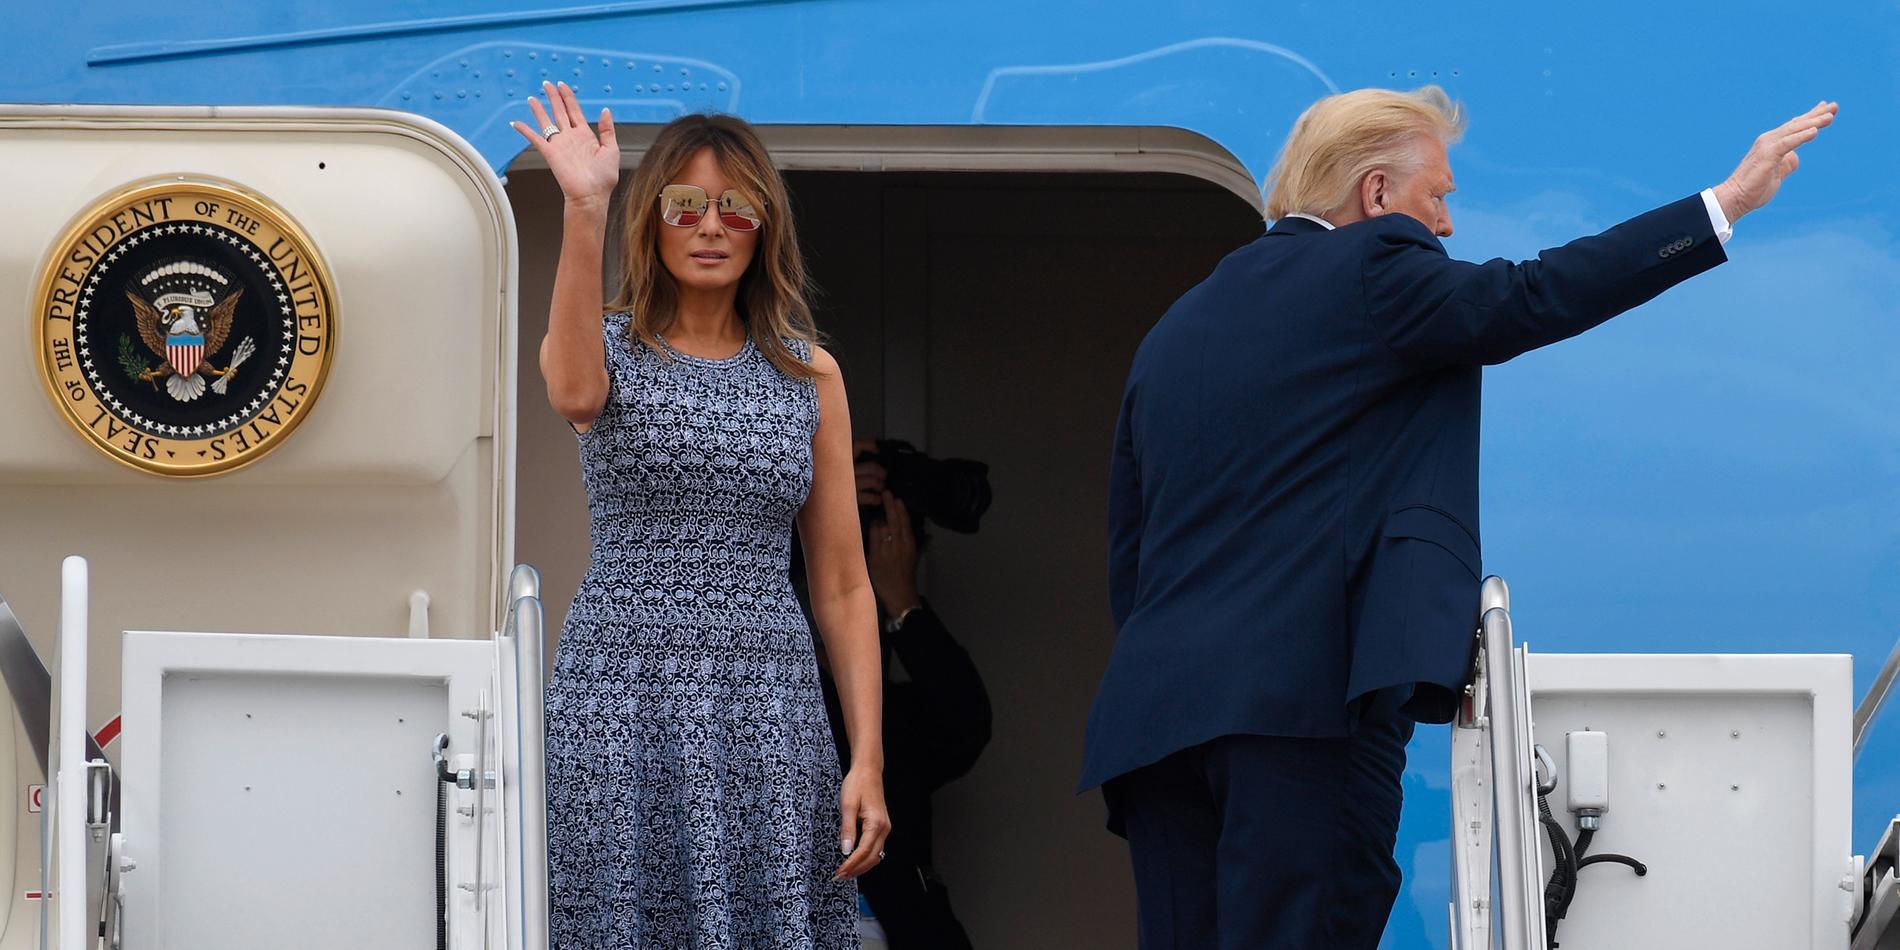 First lady Melania Trump stöttar sin man, president Donald Trump, i alla väder. Men till skillnad mot alla hans klavertramp ser Melania till att inte hamna i blåsväder.